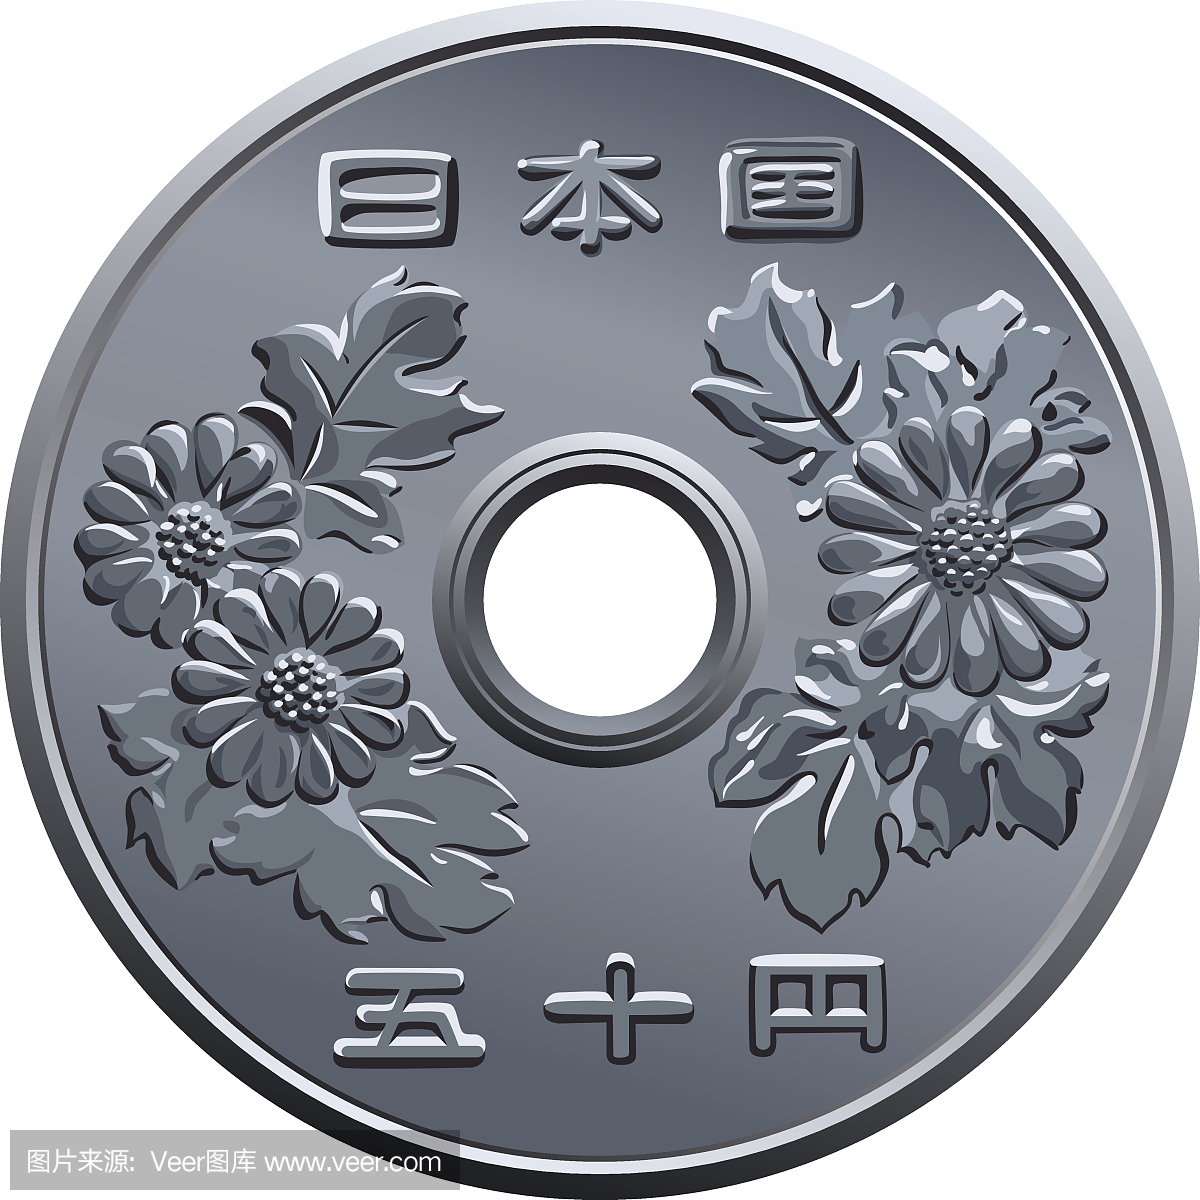 日元纸币,日元,日本钱,日本钞票